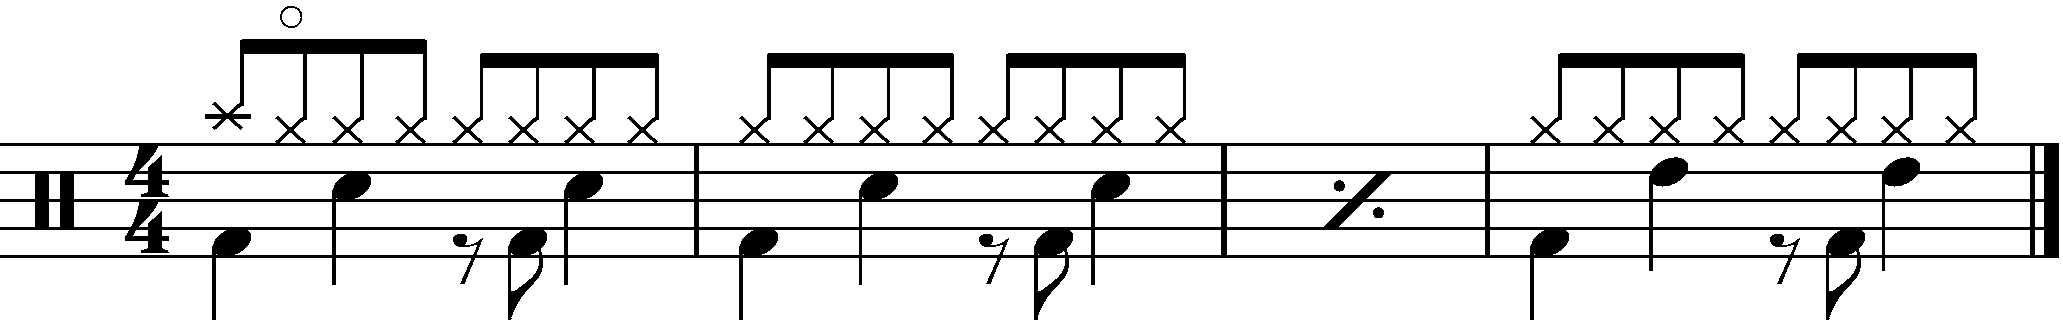 An four bar example